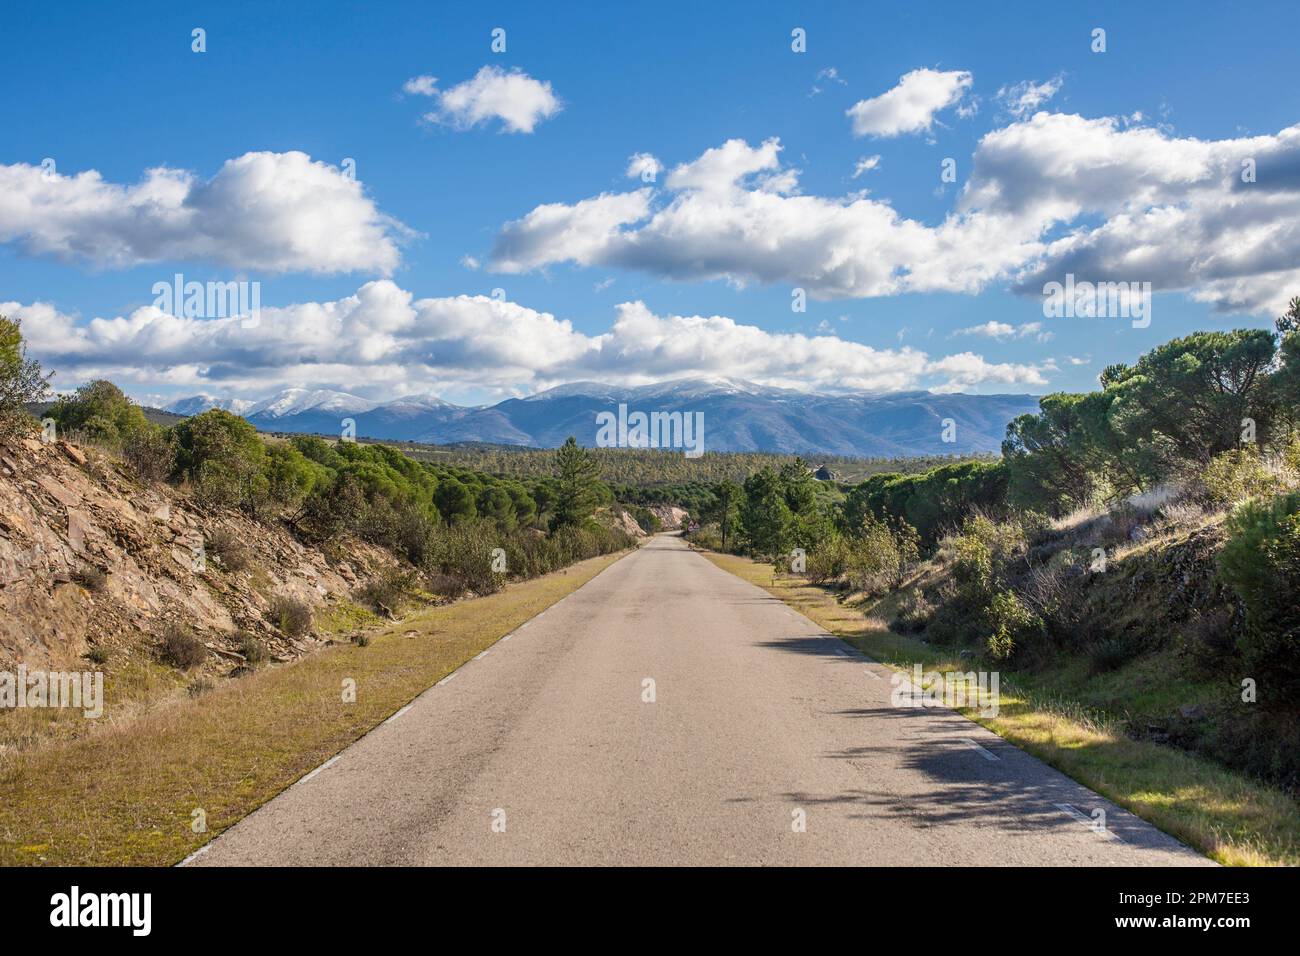 Carretera local CC-168 en Granadilla afueras, España. Carretera de gran valor escénico. Foto de stock